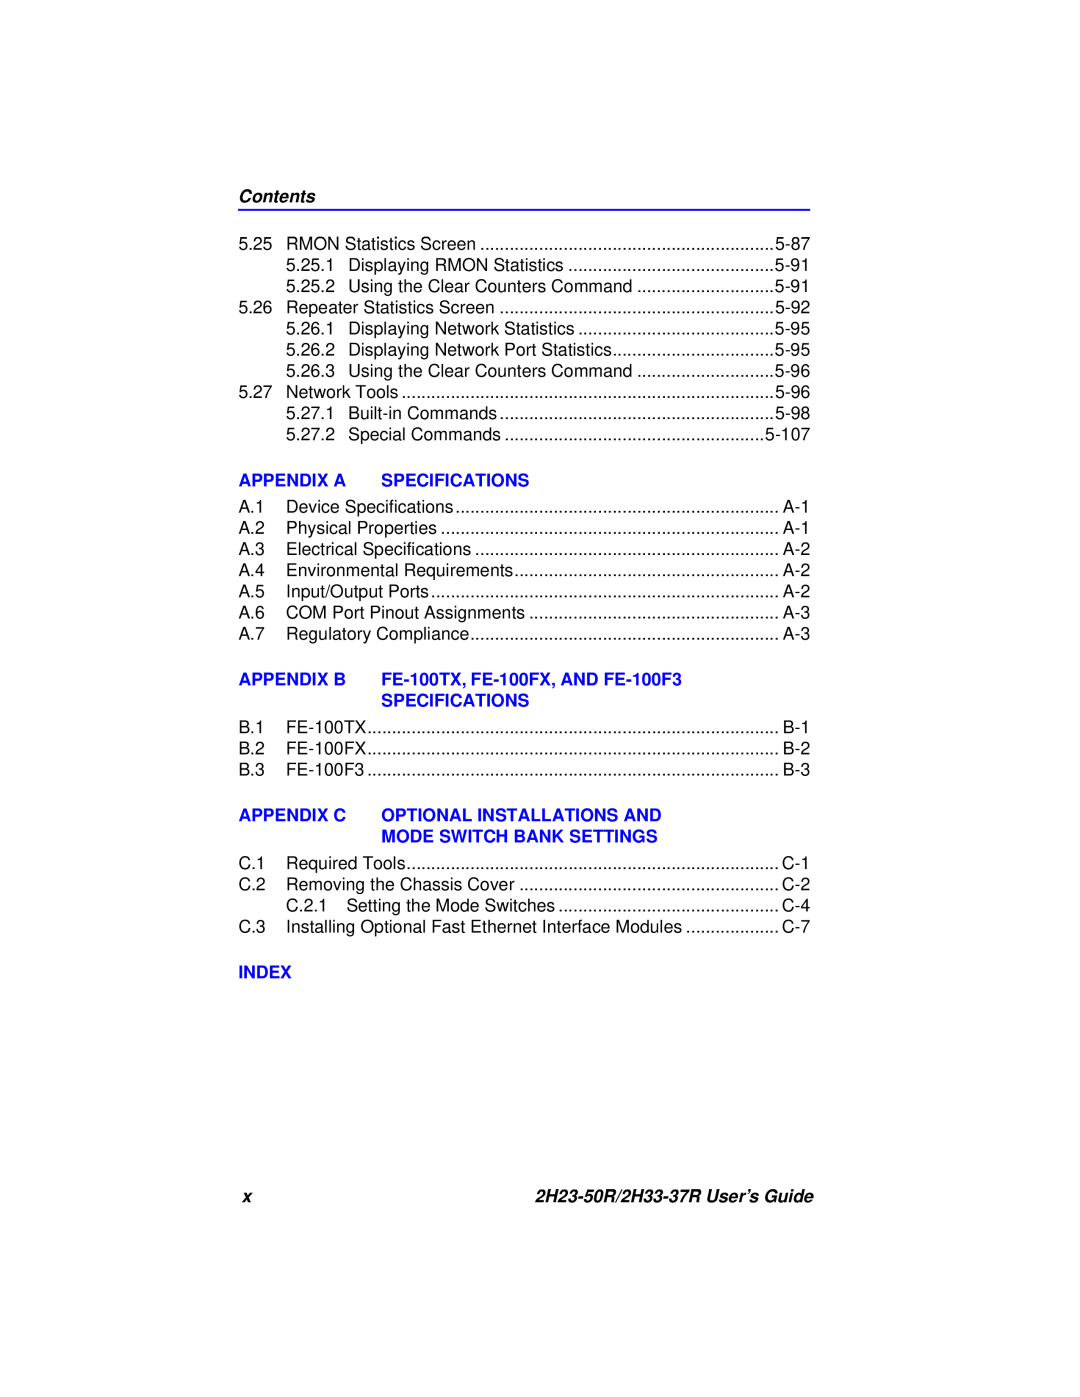 Cabletron Systems 2H33-37R Contents, Appendix A, Specifications, Appendix B, FE-100TX, FE-100FX, AND FE-100F3, Appendix C 